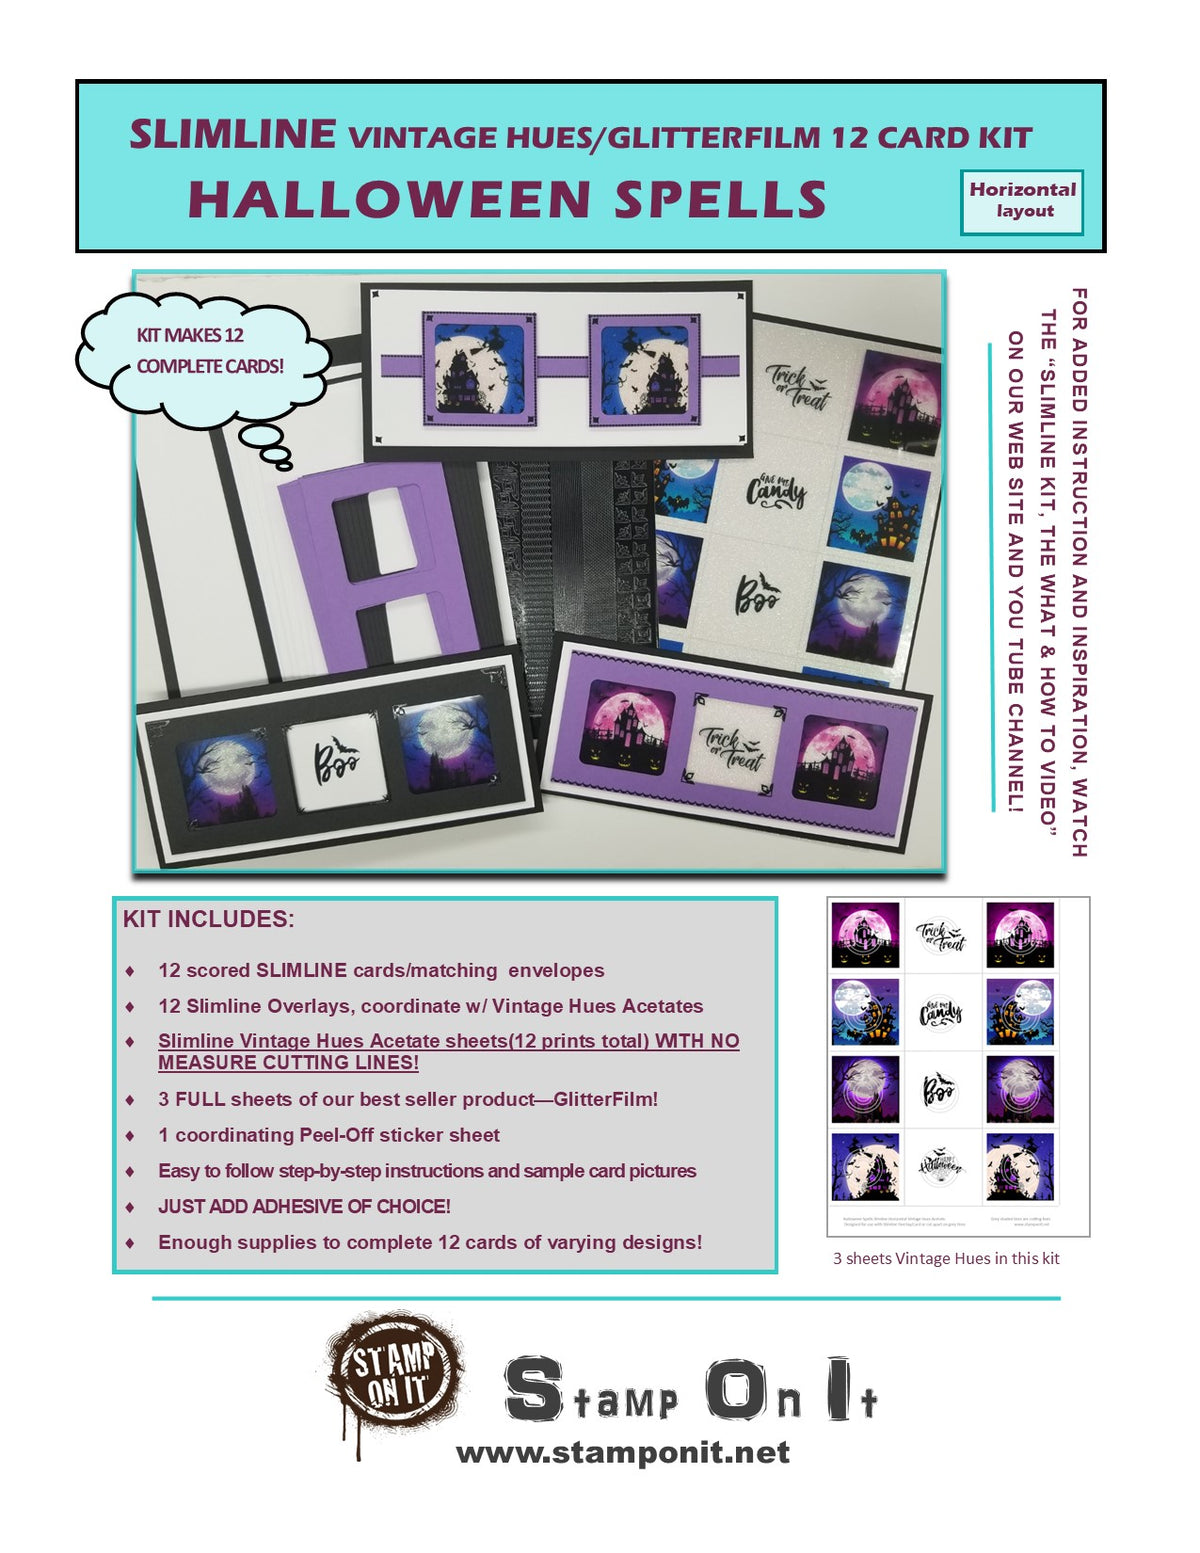 GlitterFilm & Vintage Hues 12 Slimline Card Kit Halloween Spells